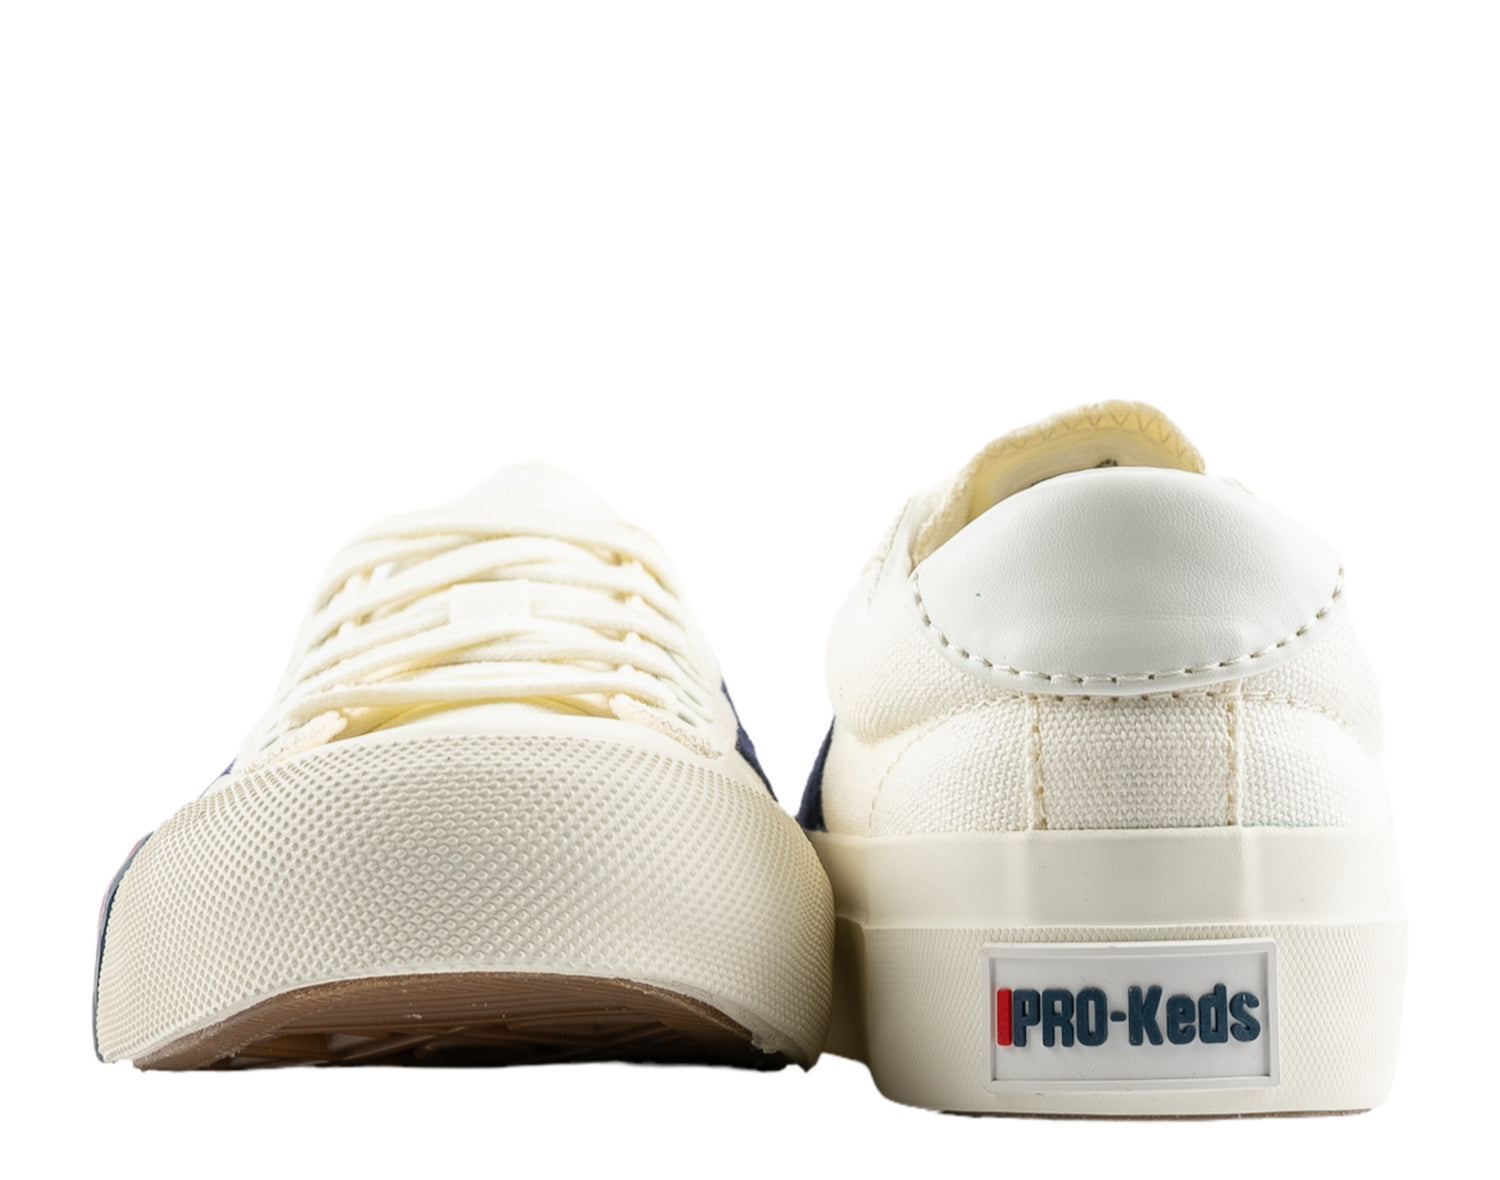 Pro-Keds Royal Plus Canvas Unisex Shoes